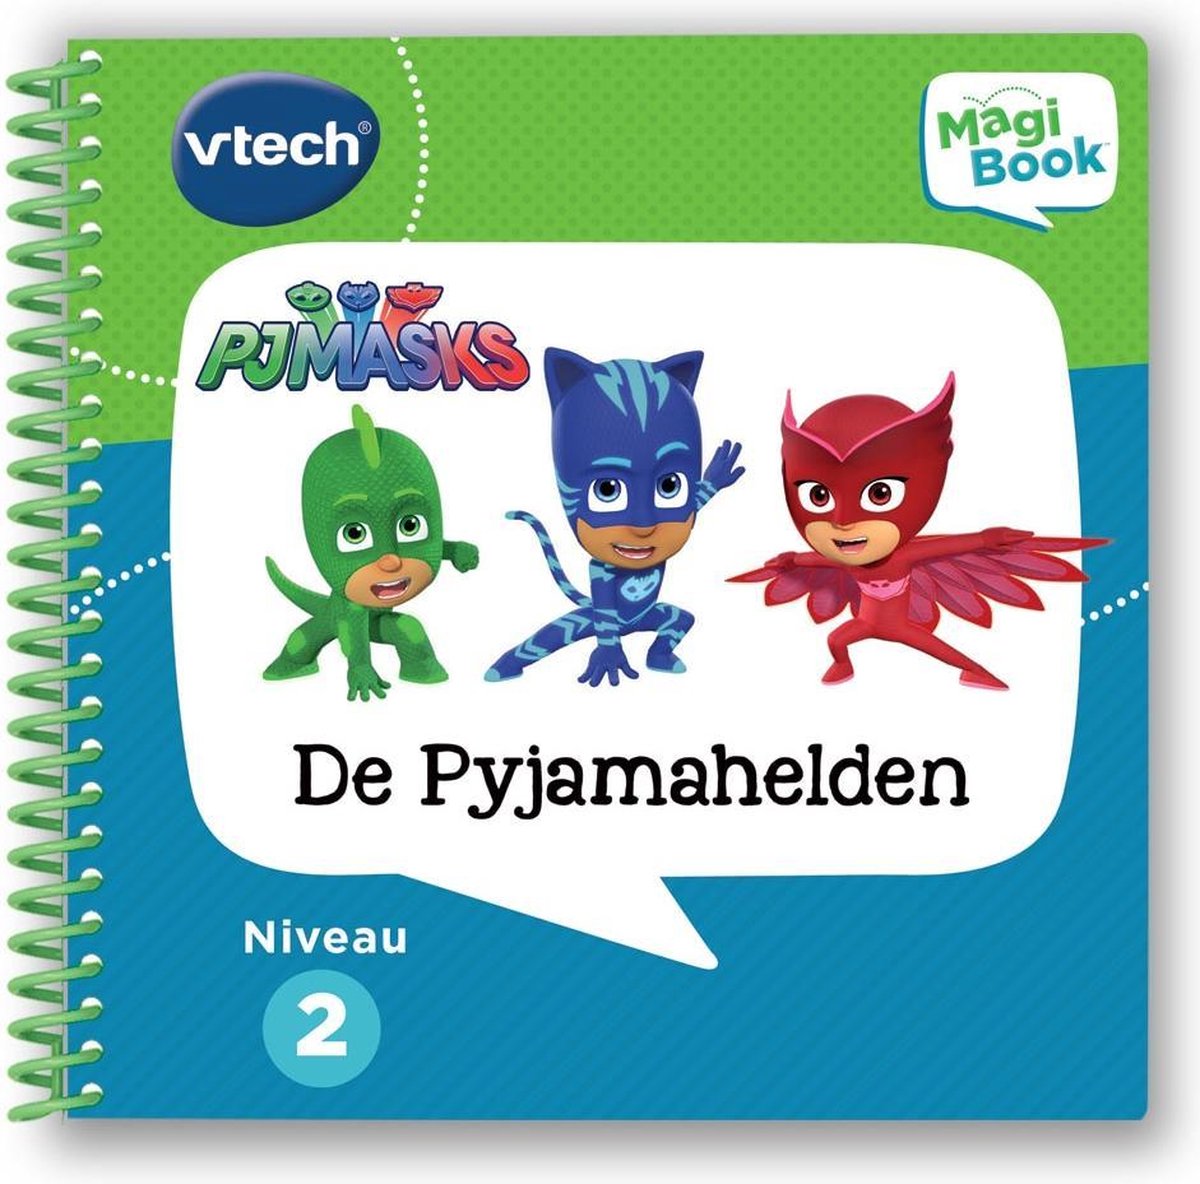 VTech MagiBook Activiteitenboek PJ Masks - De Pyjamahelden - Educatief Speelgoed - Niveau 2 - 6 tot 8 Jaar - VTech